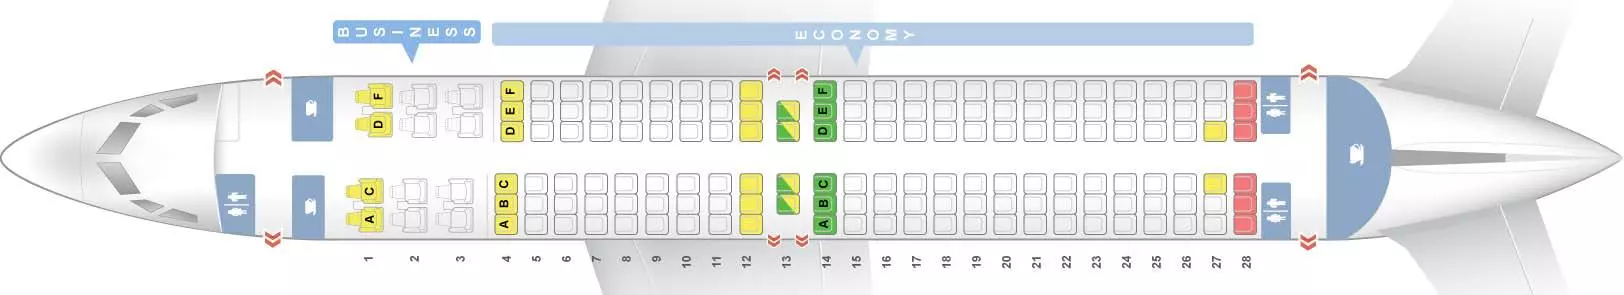 Тонкости расположения пассажирских мест самолета боинг 737-800: обзор +видео